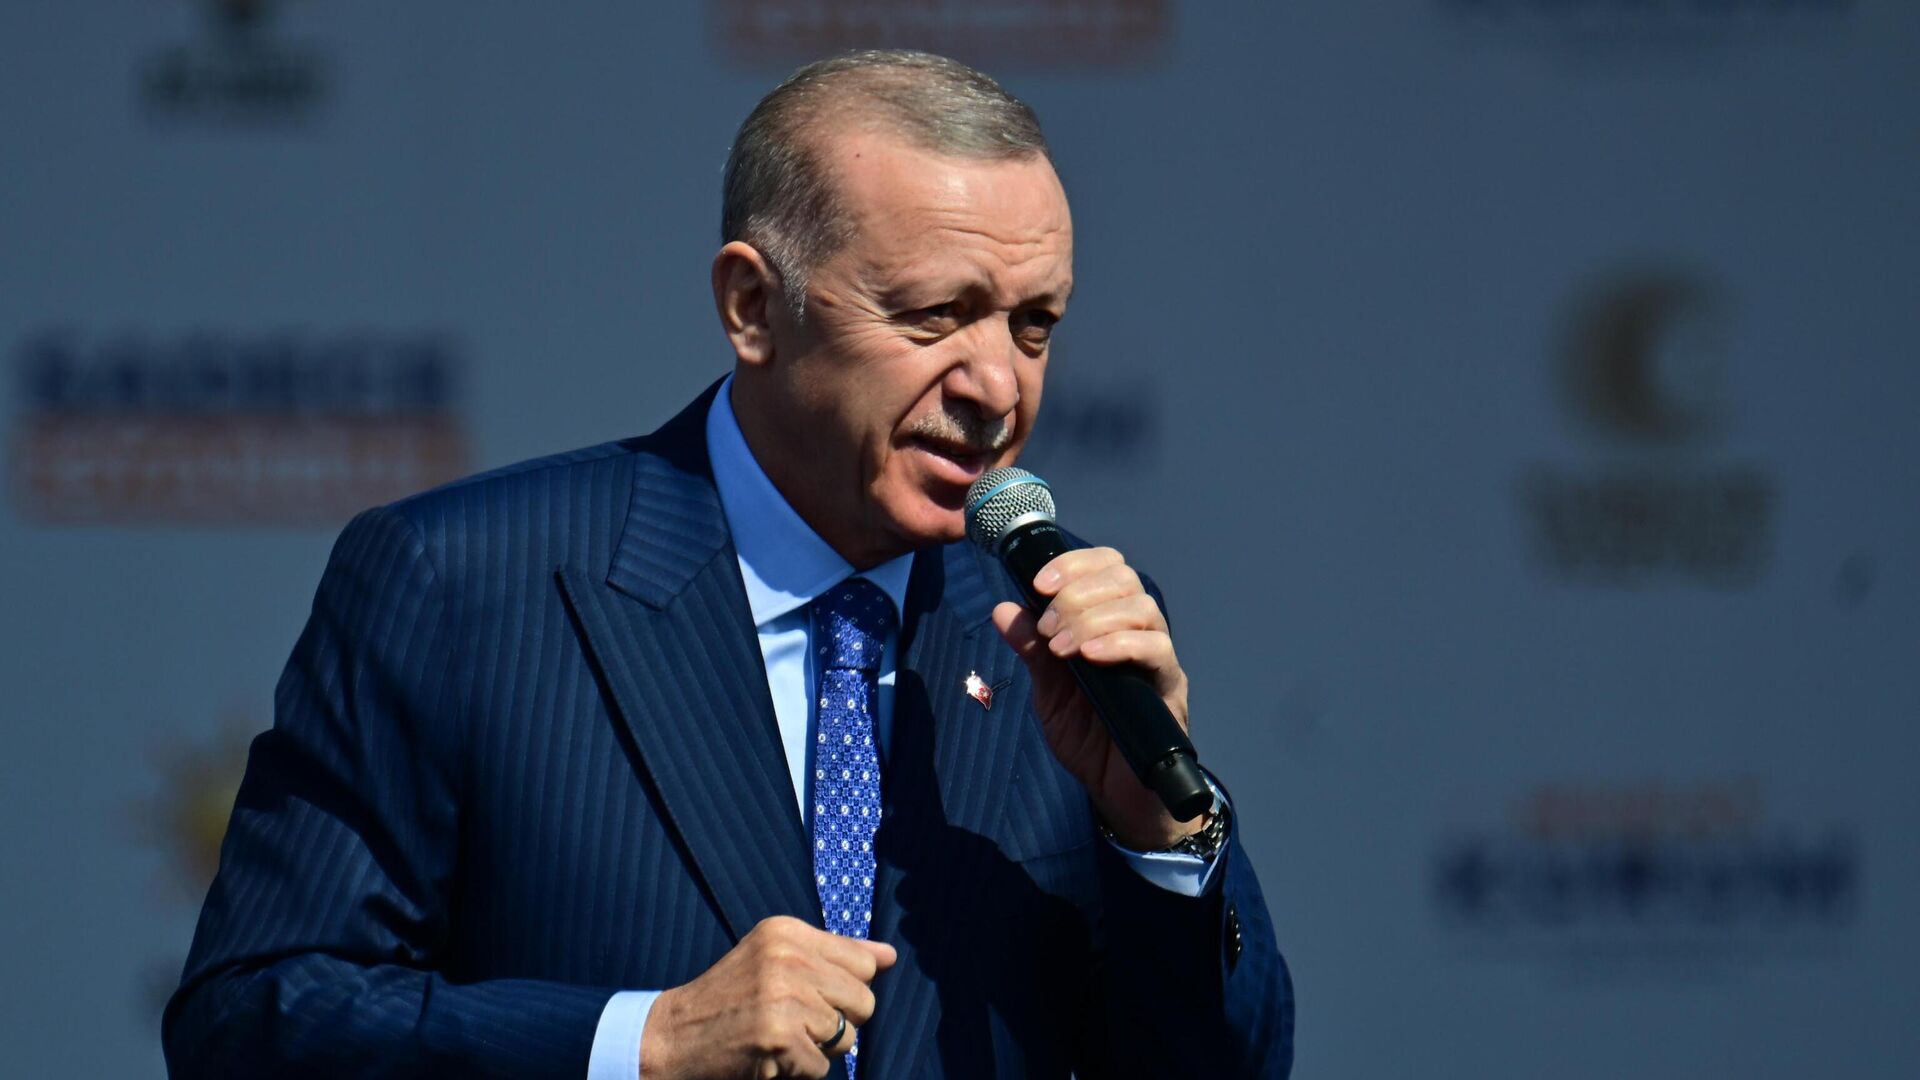 Cumhurbaşkanı Recep Tayyip Erdoğan’a Nasıl Ulaşabilirim? İsteklerimi ve Dileklerimi Nasıl İletebilirim?